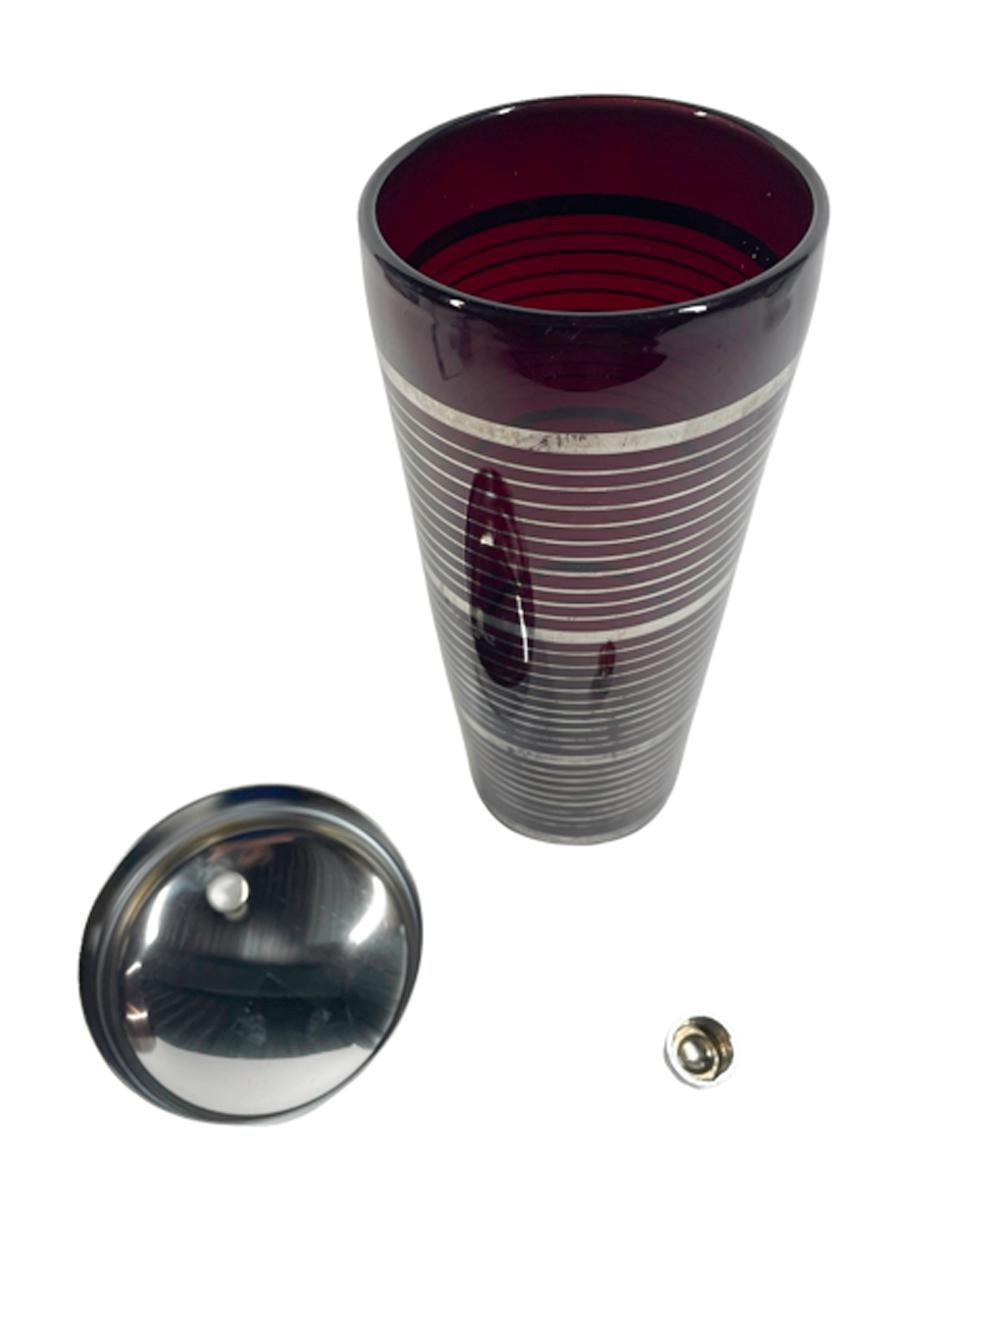 Shakers en verre rubis attribué à Paden City Glass avec des bandes de largeur variable en argent (usure mineure) et surmonté d'un couvercle chromé.